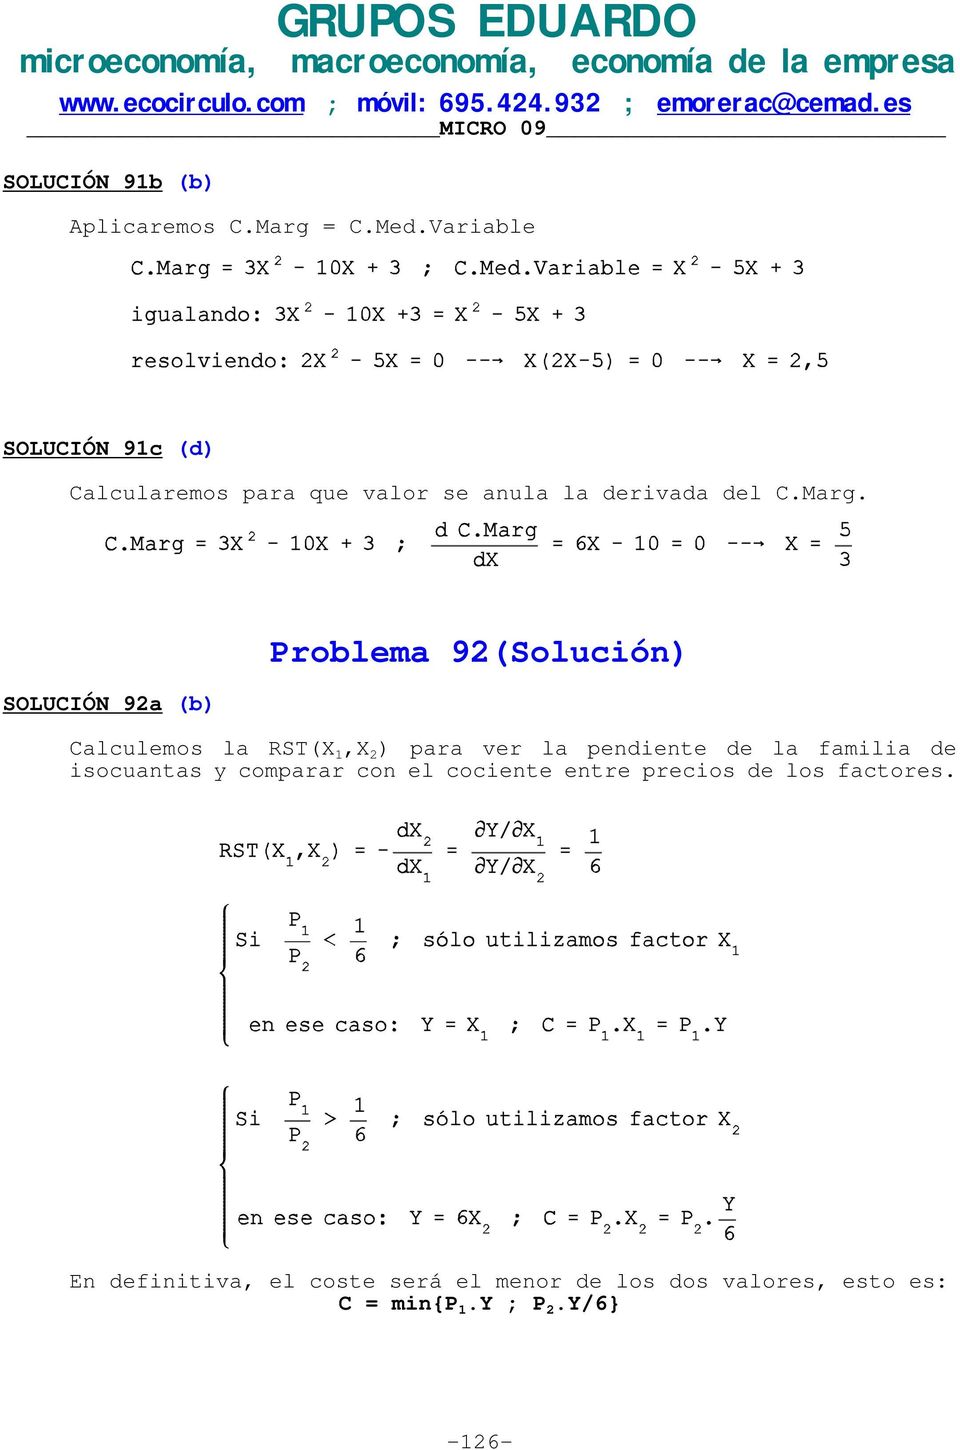 SOLUCIÓN 92a (b) Problema 92(Solución) Calculemos la RST(X 1,X 2 ) para ver la pendiente de la